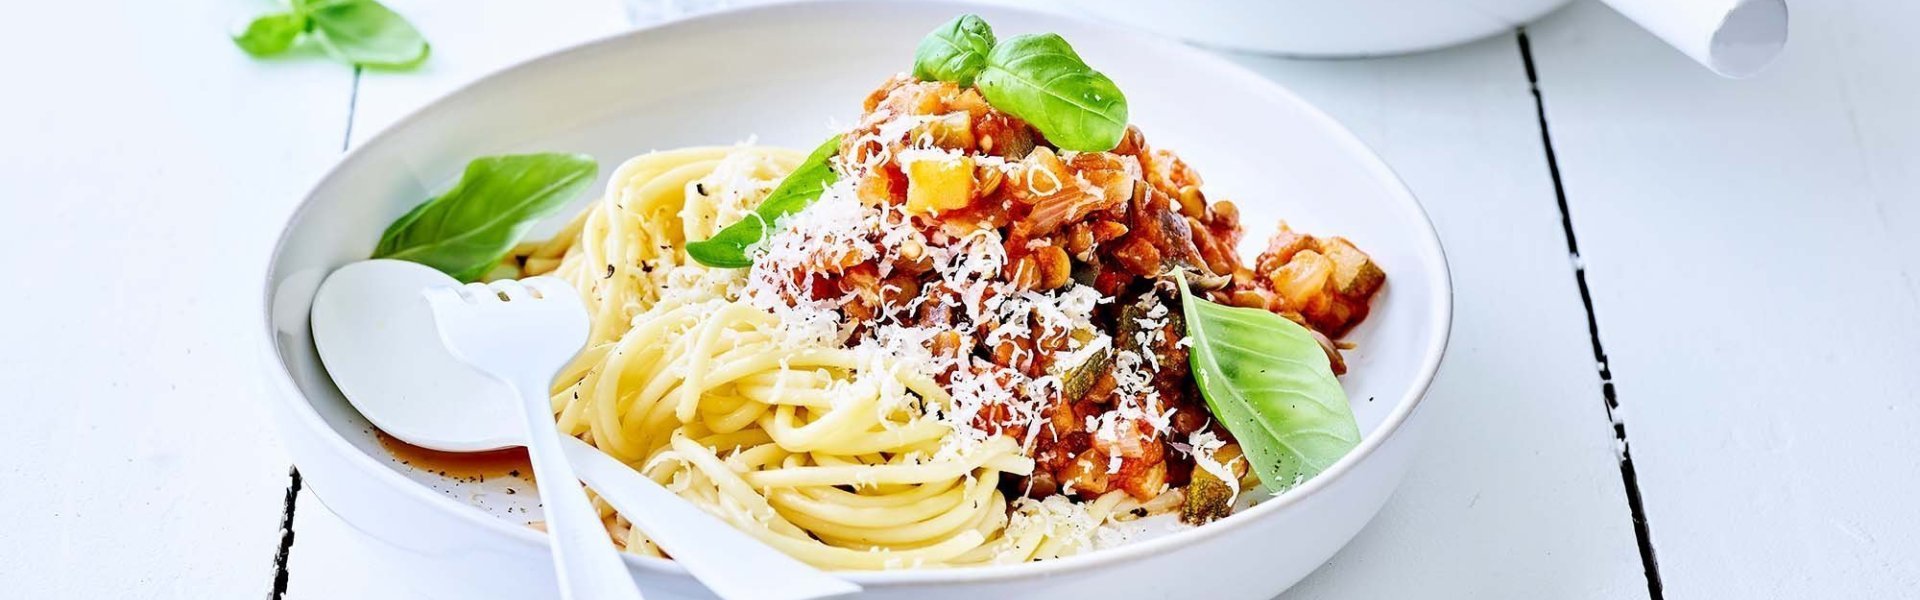 Spaghetti geserveerd in wit bord met portie saus half over de pasta. Versgemalen kaas over de saus met enkele verse basilicumblaadjes. 